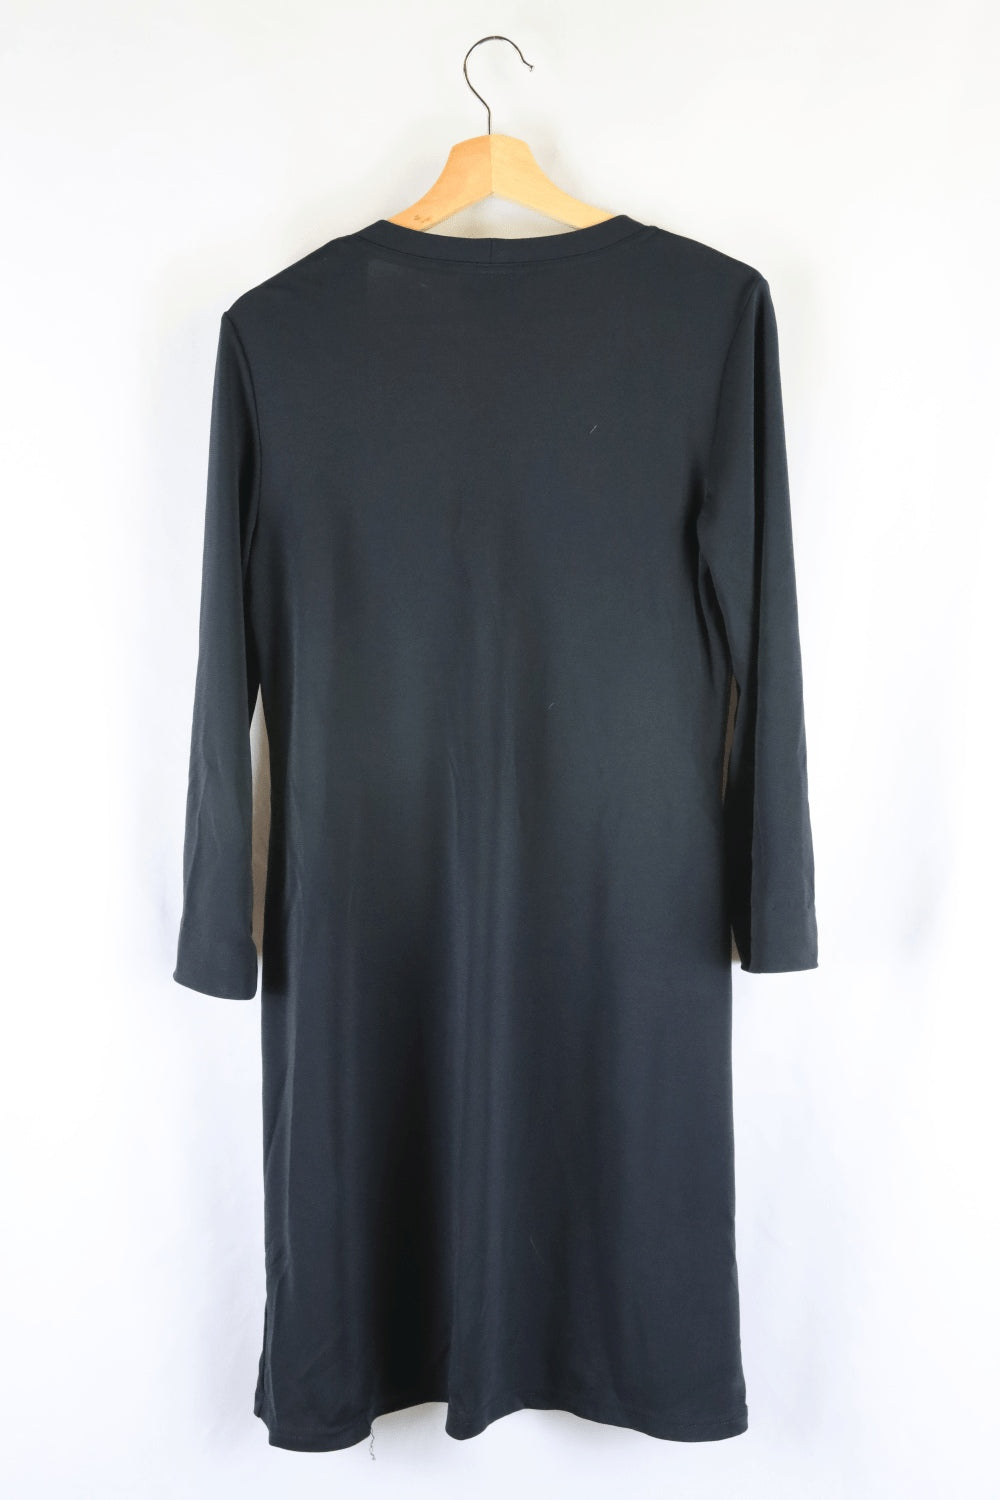 Miladys Black Lace Cardigan 18 - Reluv Clothing Australia